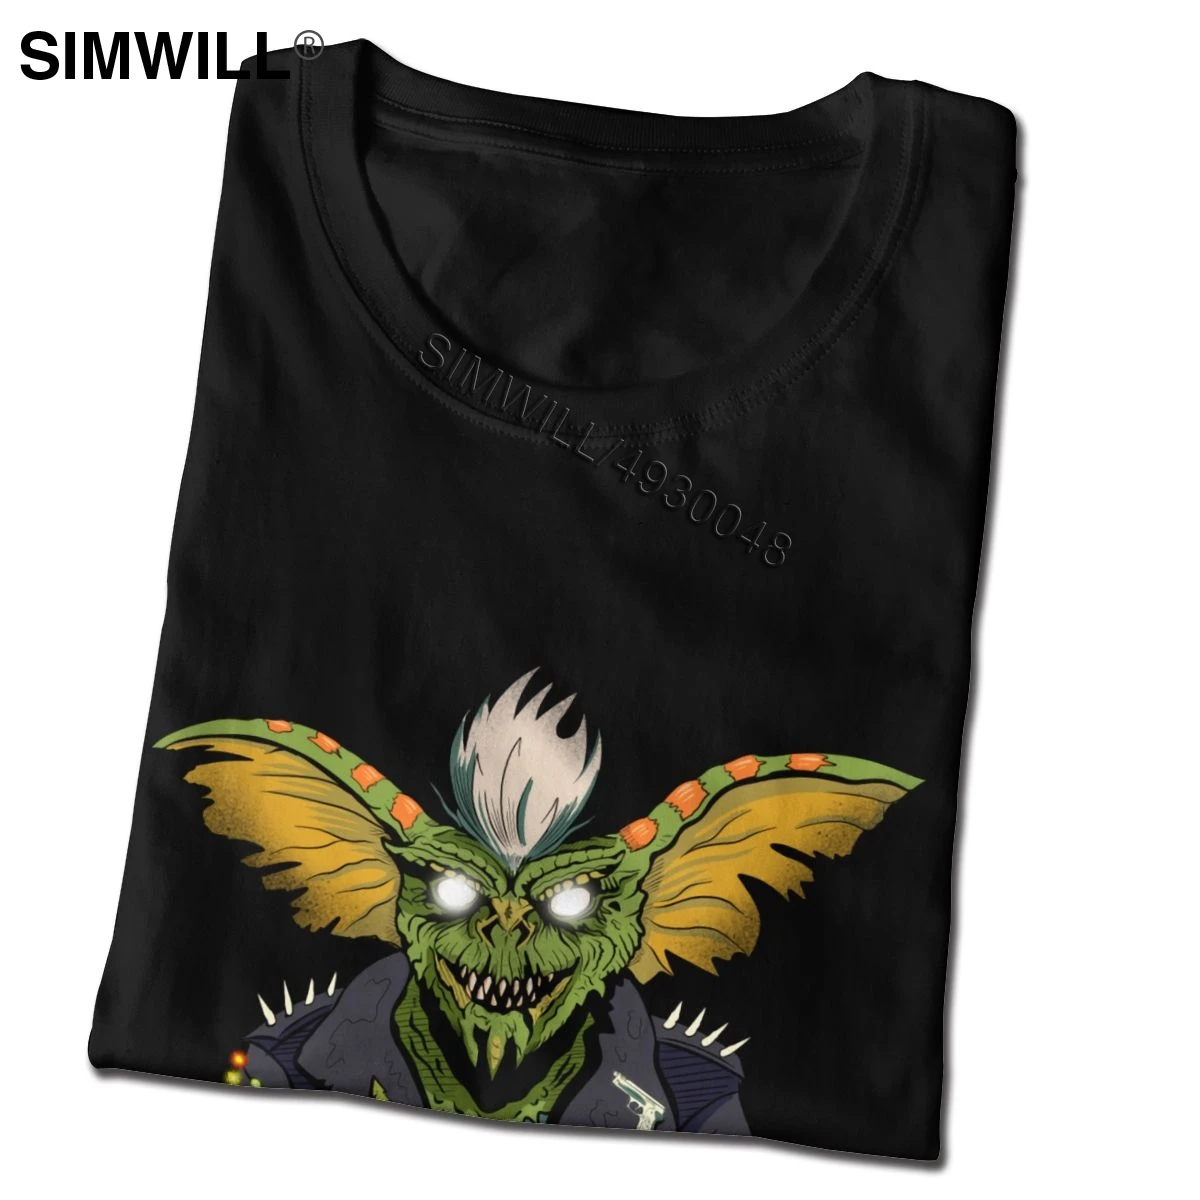 El mal Gremlins Camisetas Camiseta del Diseño de la Novedad Suave de Algodón T-Shirts para Hombres de Manga Corta de Gizmo 80 Película Mogwai Monstruo Retro Sci Fi Tee 5